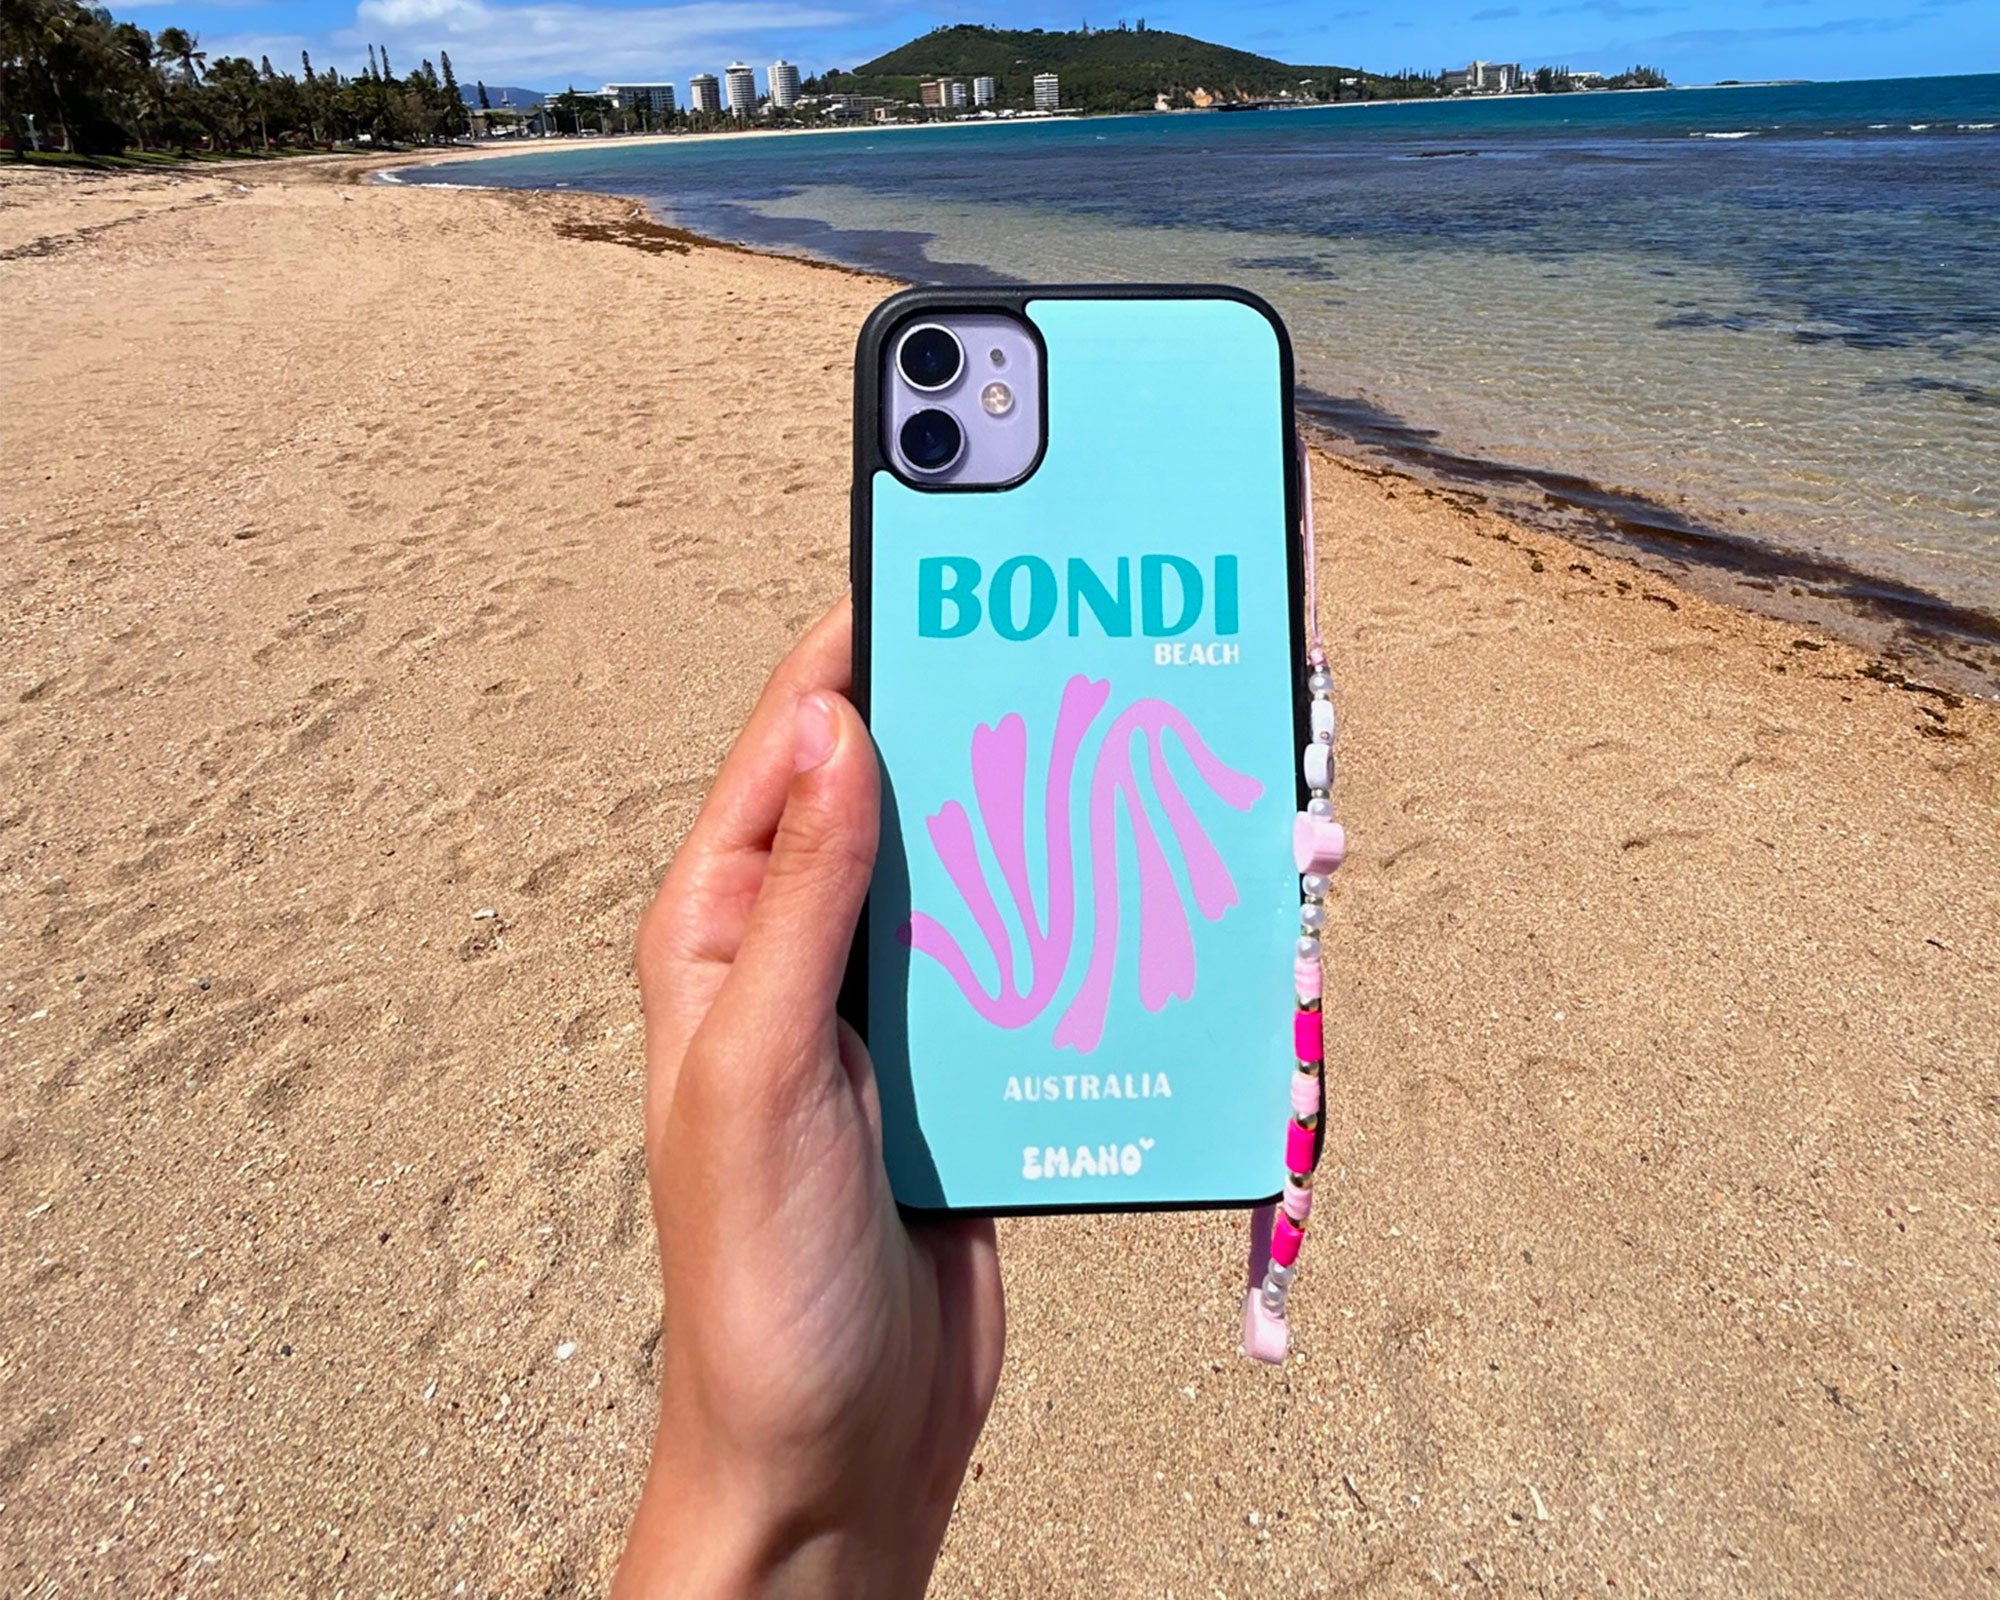 Découvrez la magie de Bondi Beach, même lorsque vous êtes loin, avec notre coque de téléphone Emano. Capturez l'esprit ensoleillé de l'Australie à chaque appel. ☀️📱 #EmanoWorld